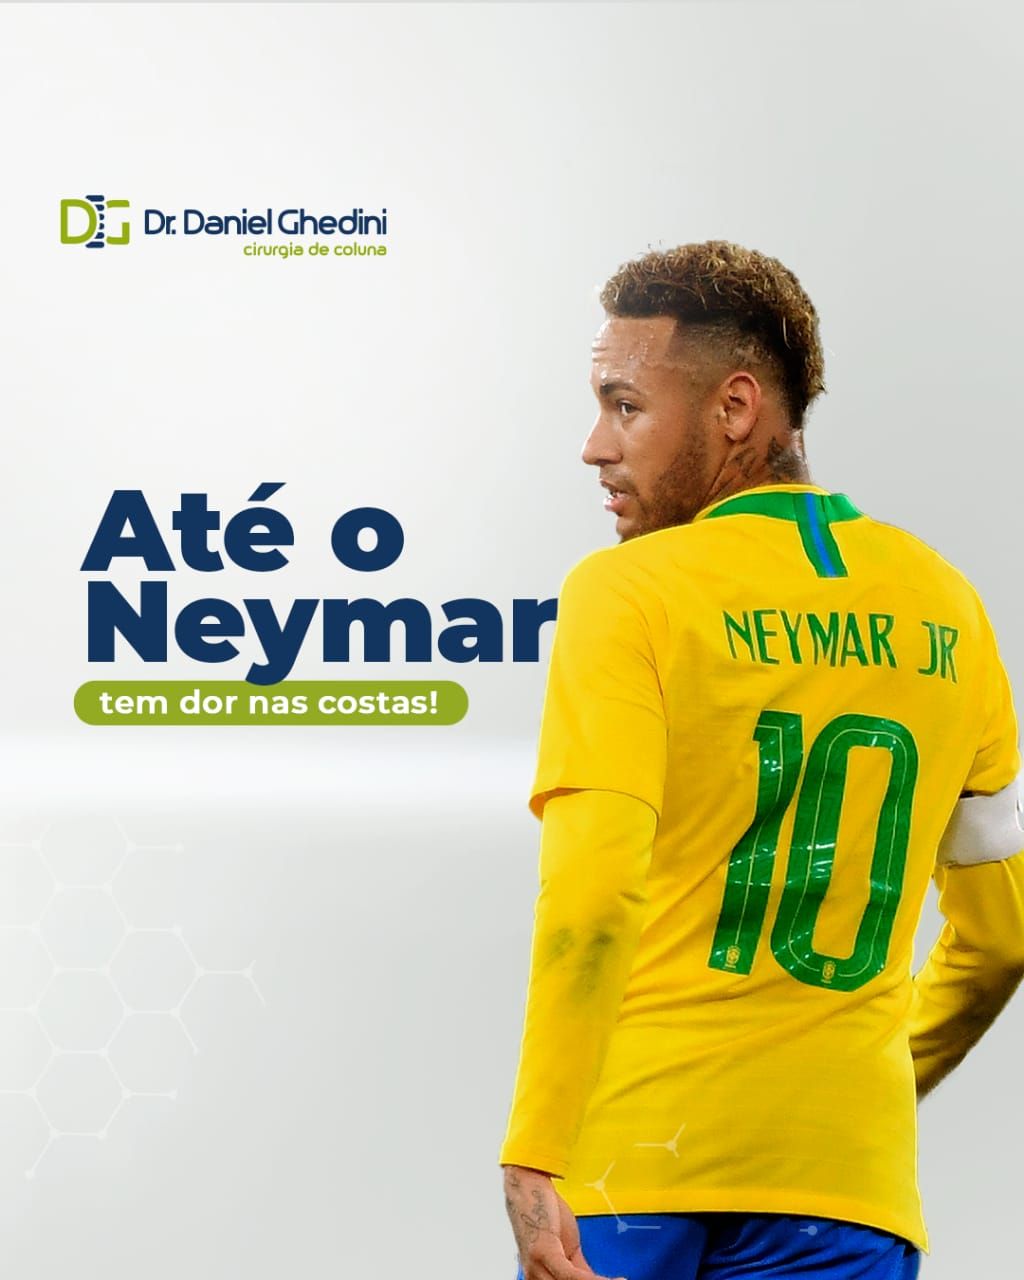 Até o Neymar tem dor nas costas